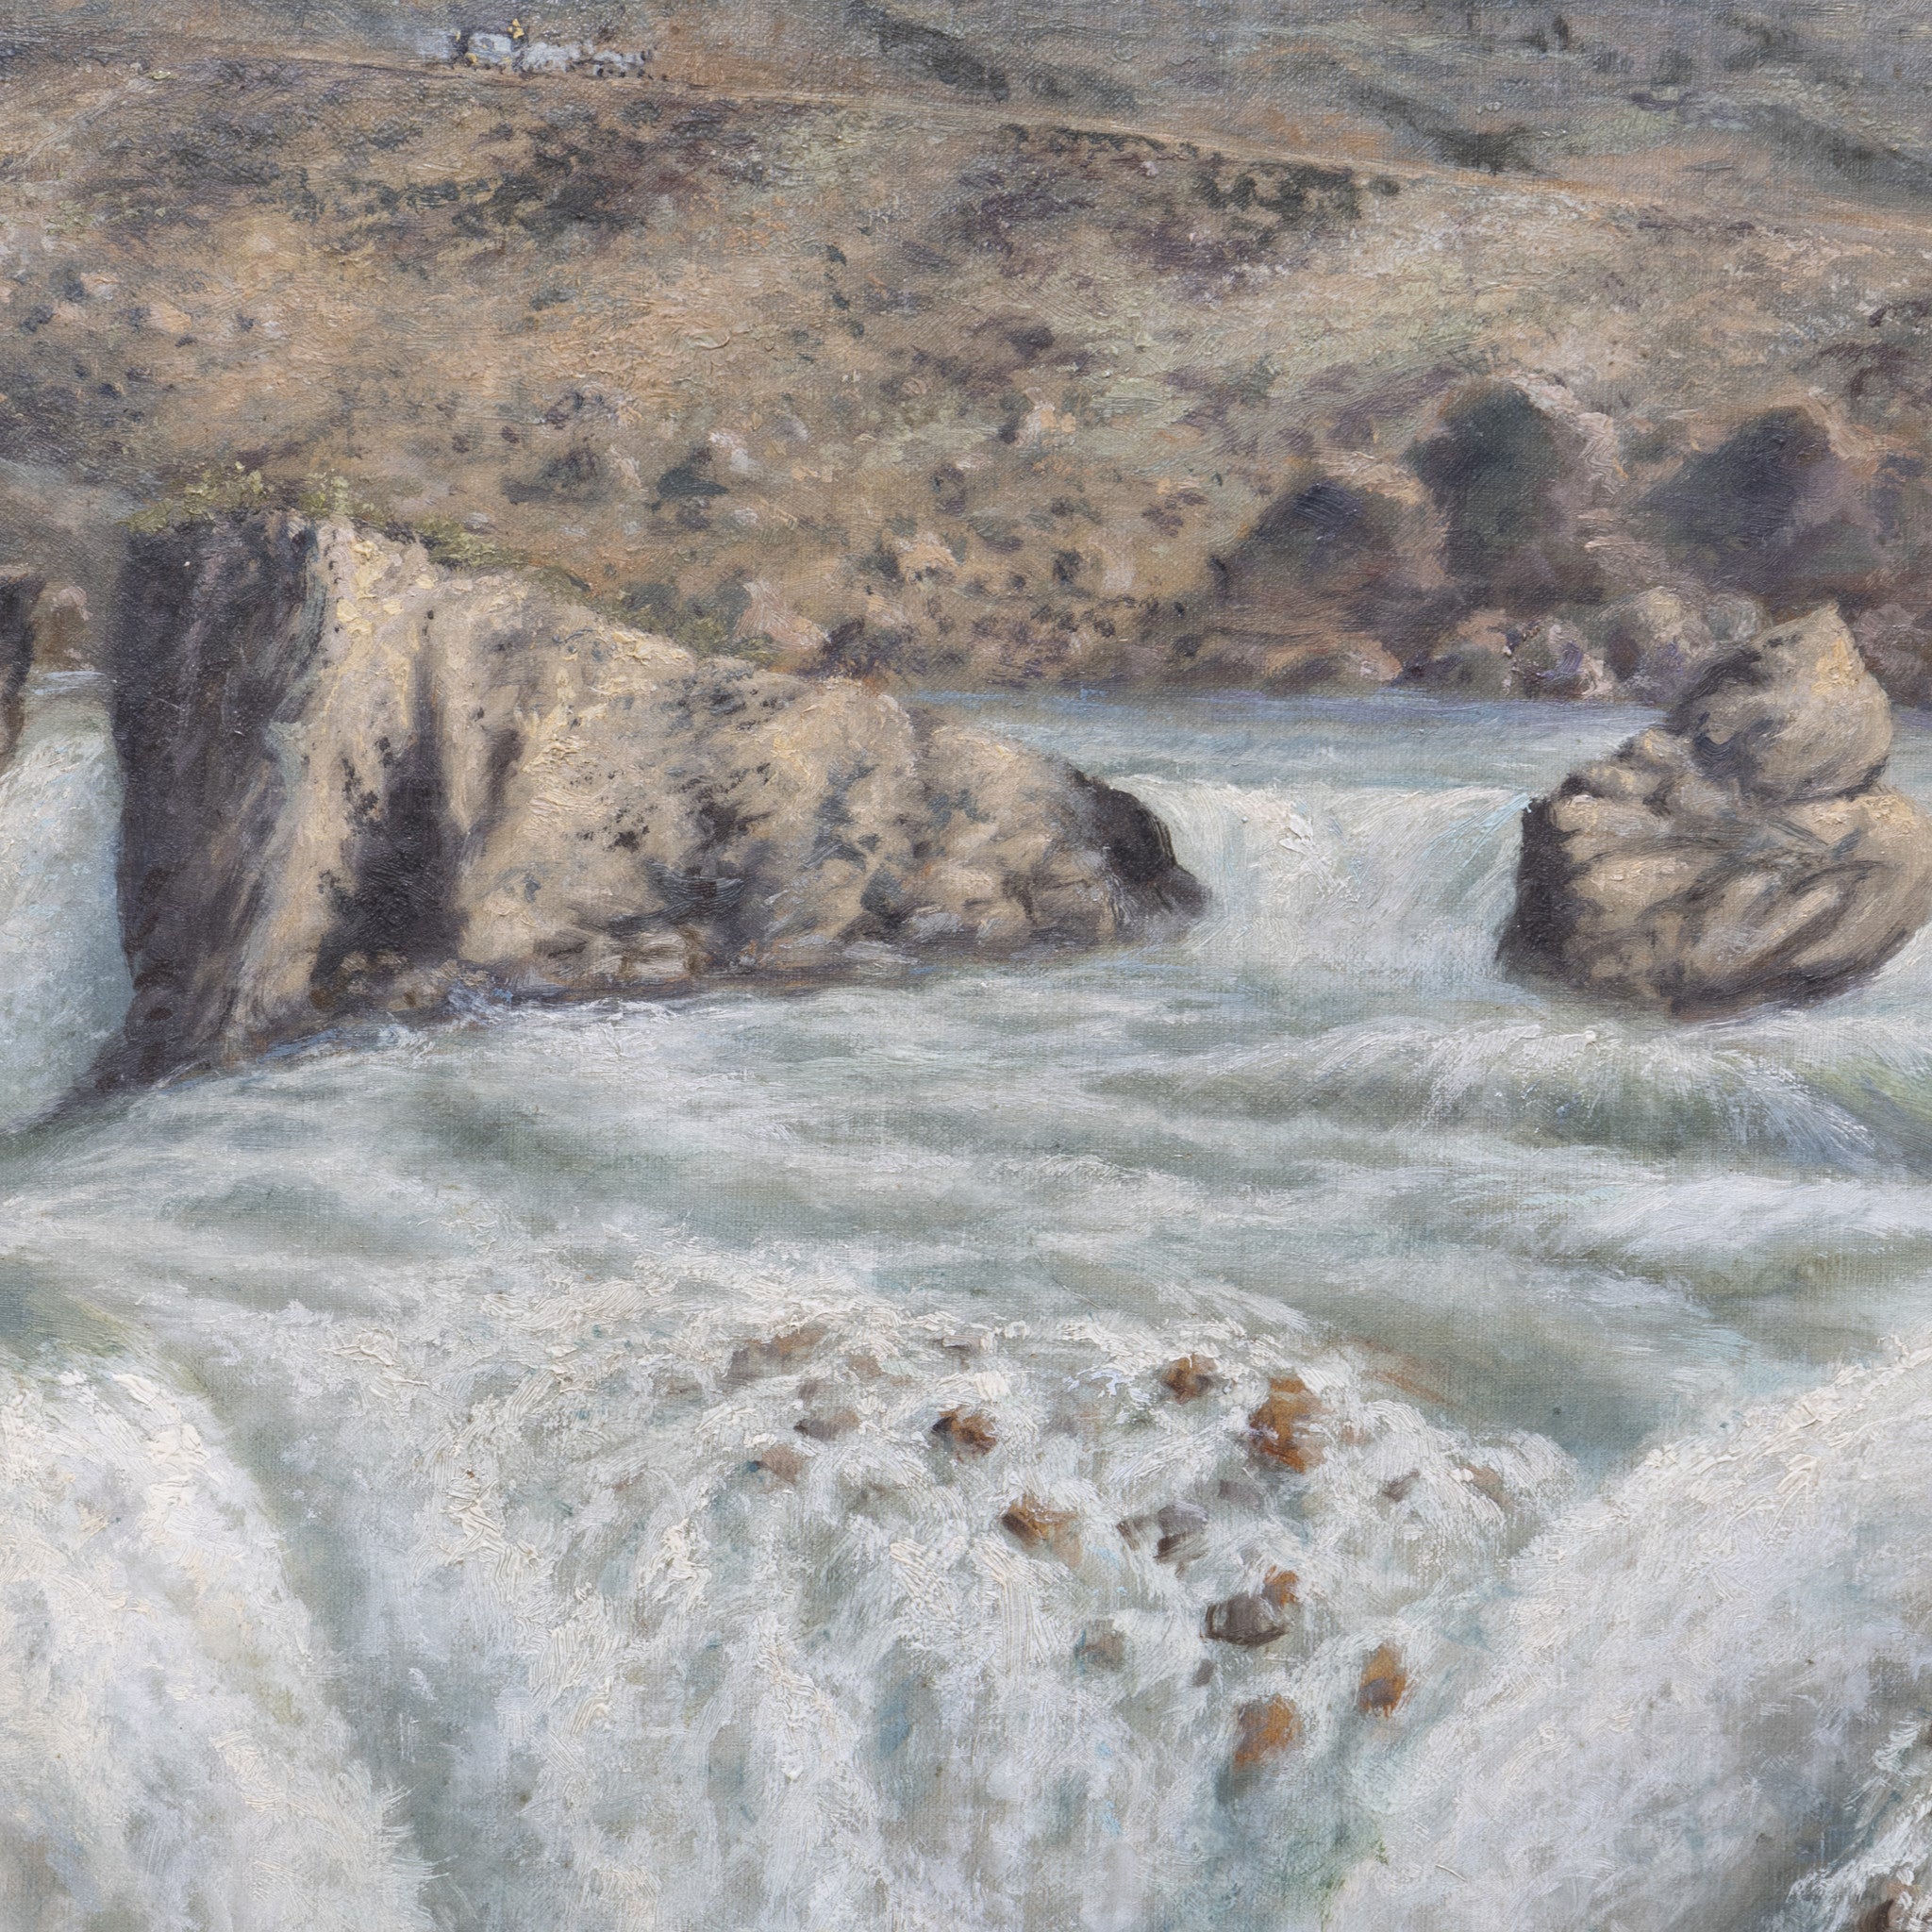 Shoshone Falls, ldaho by George E. Schroeder